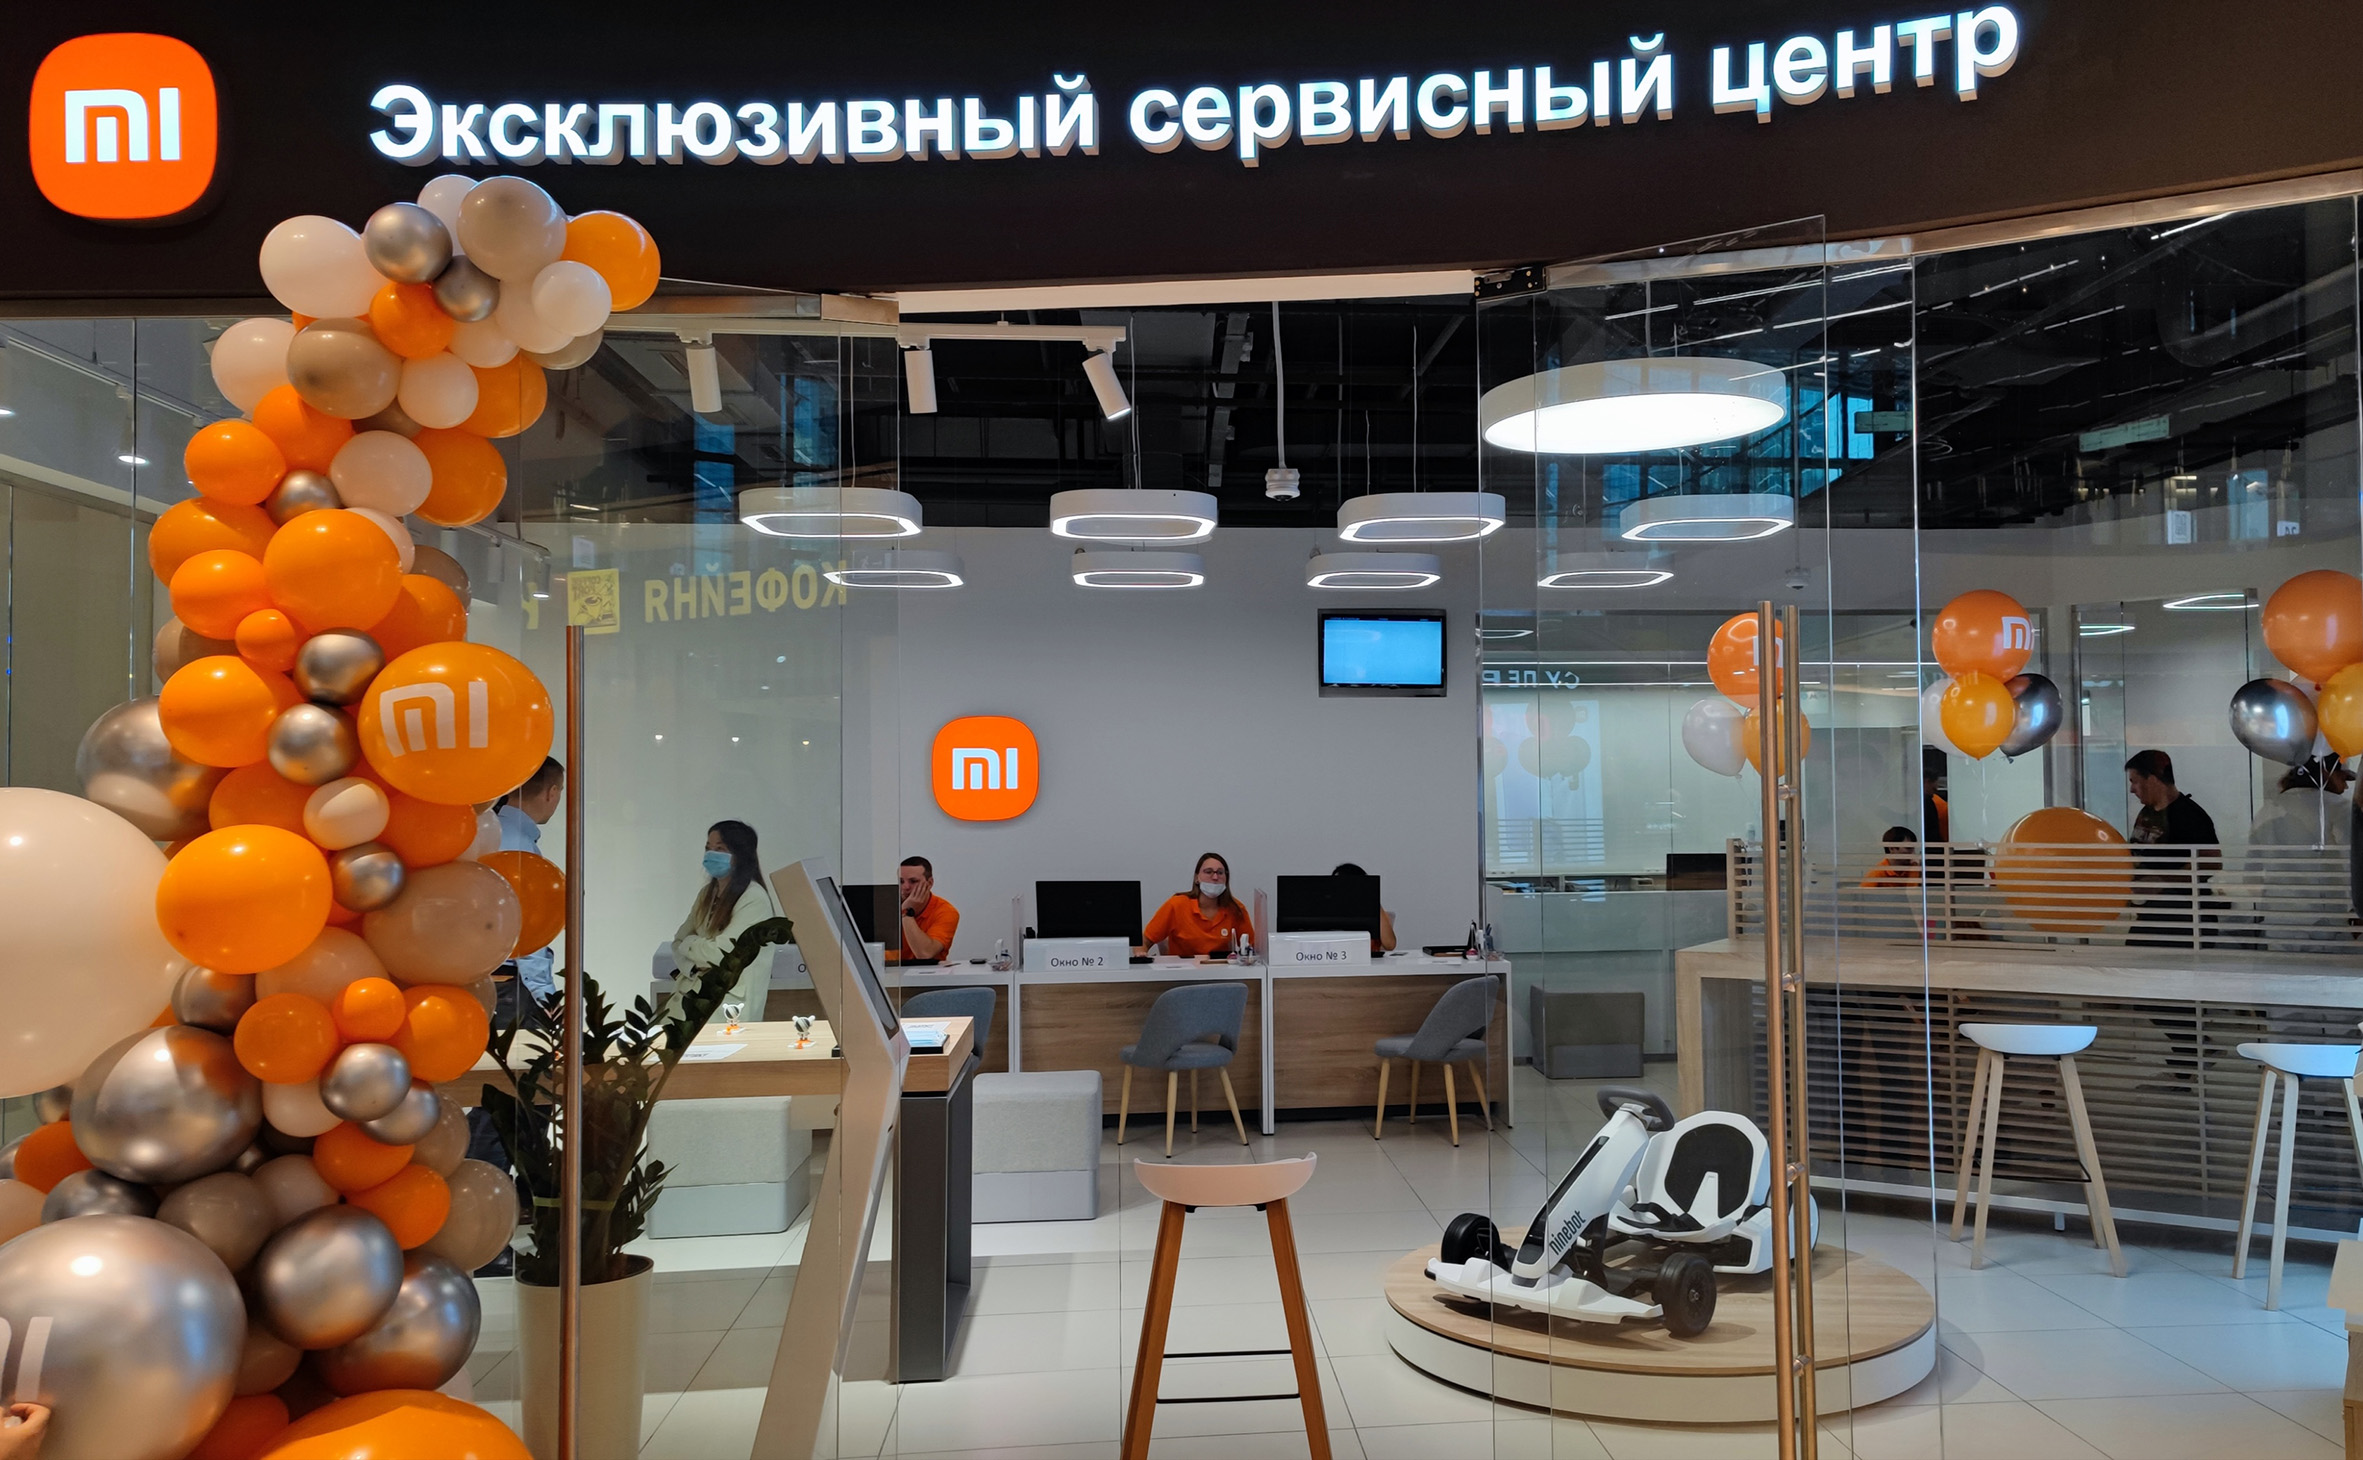 Сервисный центр xiaomi качественно с гарантией. Сервисный центр Ксиаоми. Сервисный центр Xiaomi. Сяоми сервис центр. Сервисный центр Сяоми в Москве.